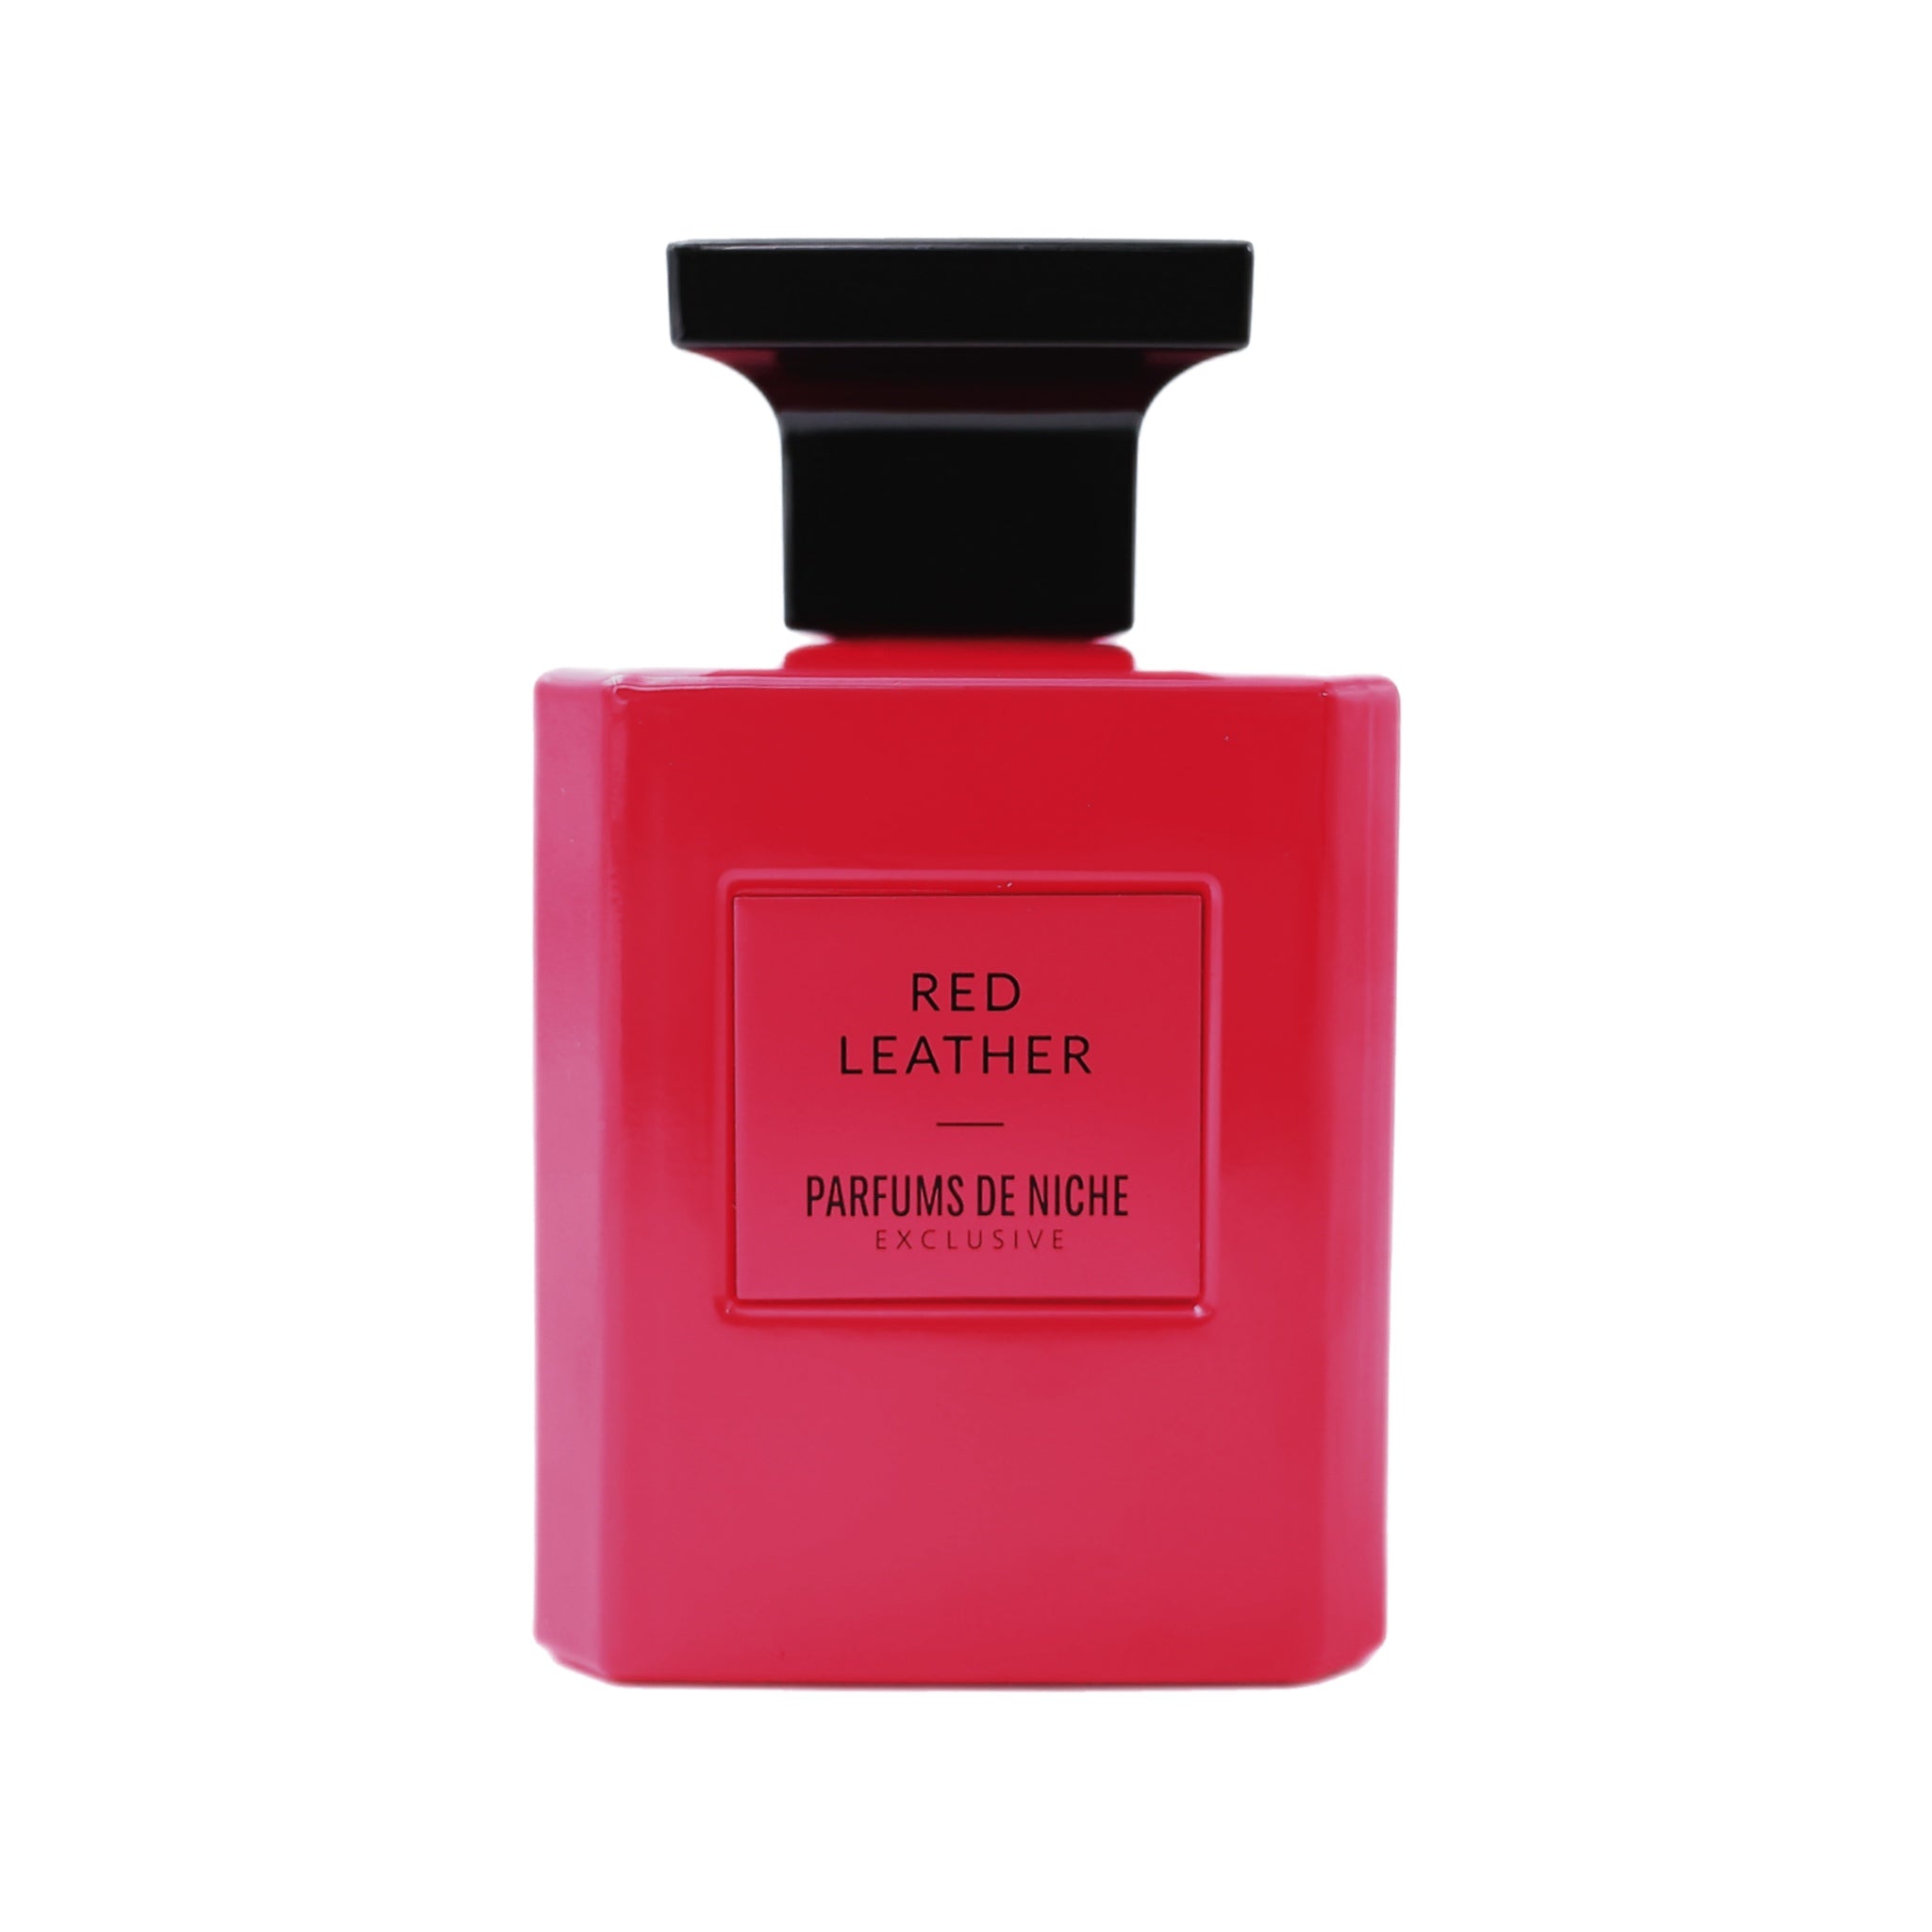 Red Leather - Parfums de Niche Paris 100 ml